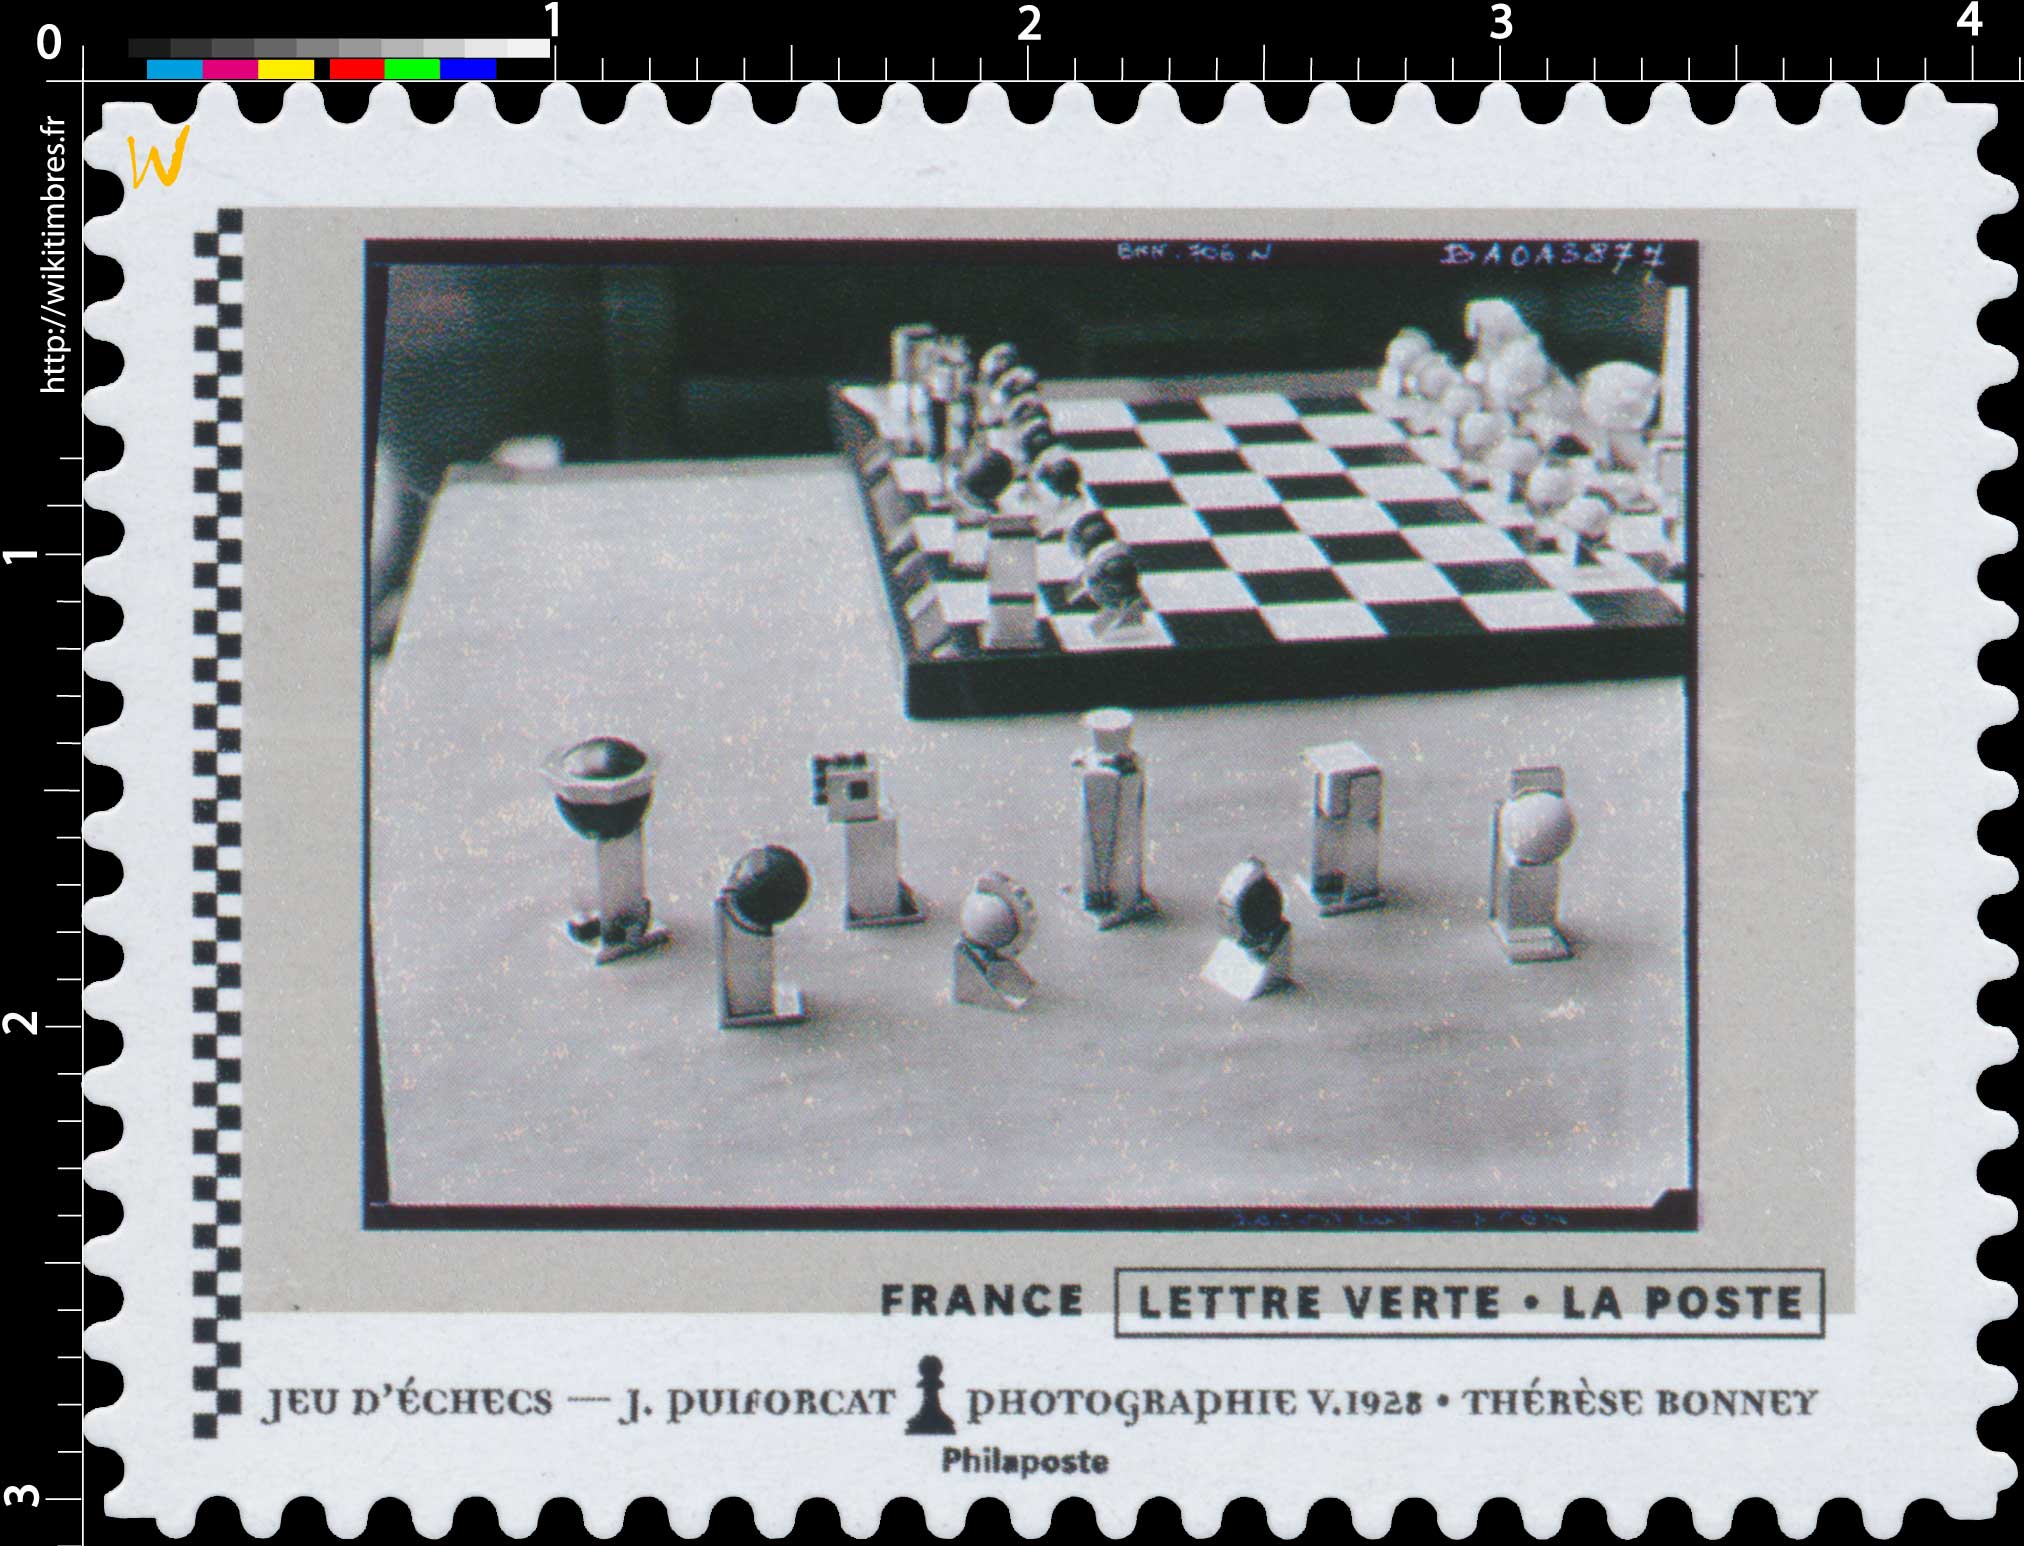 2021 Jeu d'échecs - J.Puiforcat - Photographie V.1928 - Thérèse Bonney